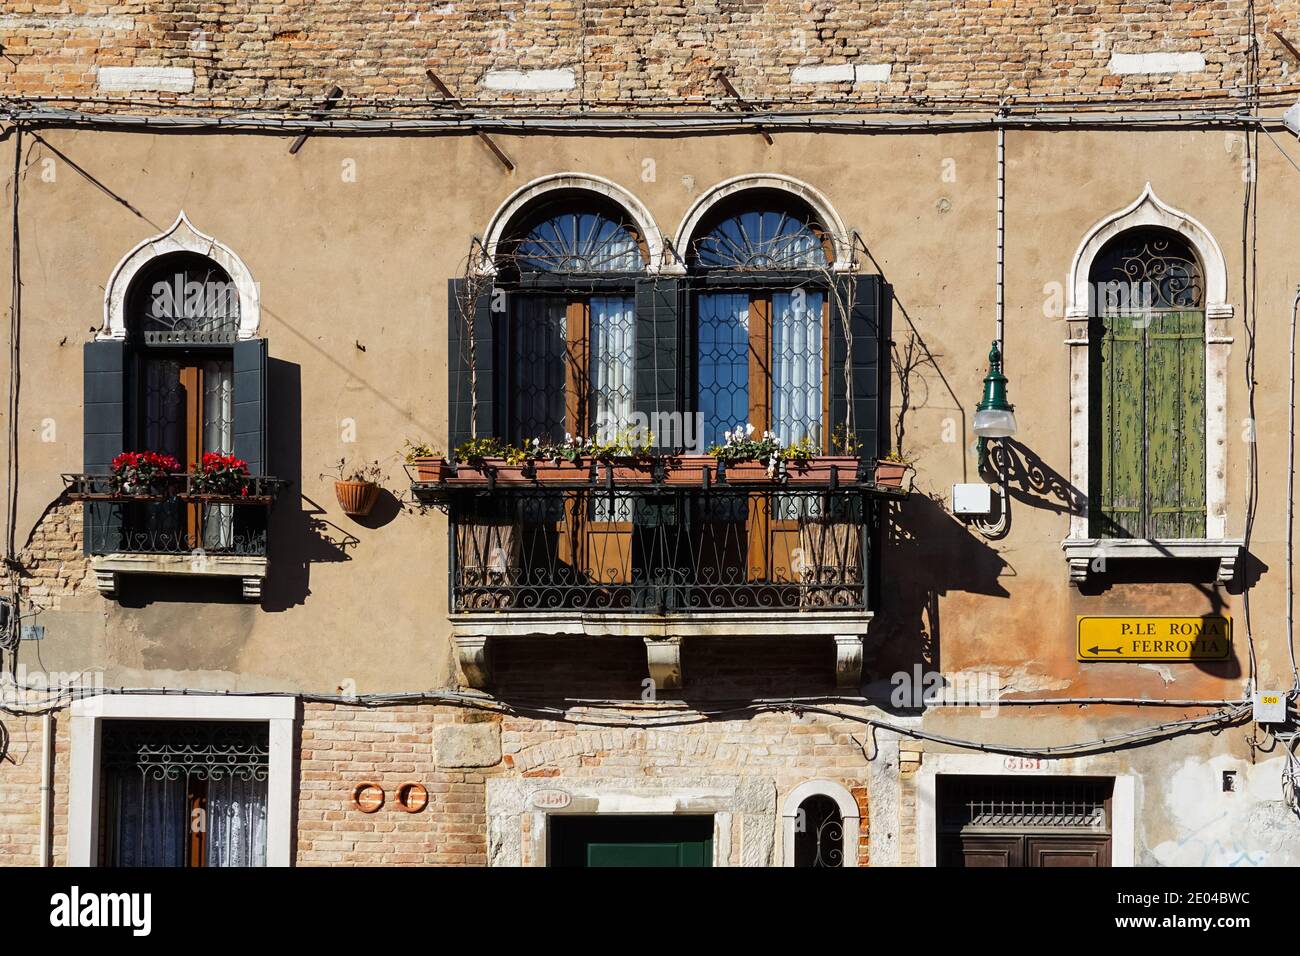 Antica facciata veneziana tradizionale con balcone e persiane in legno a Venezia, Italia Foto Stock